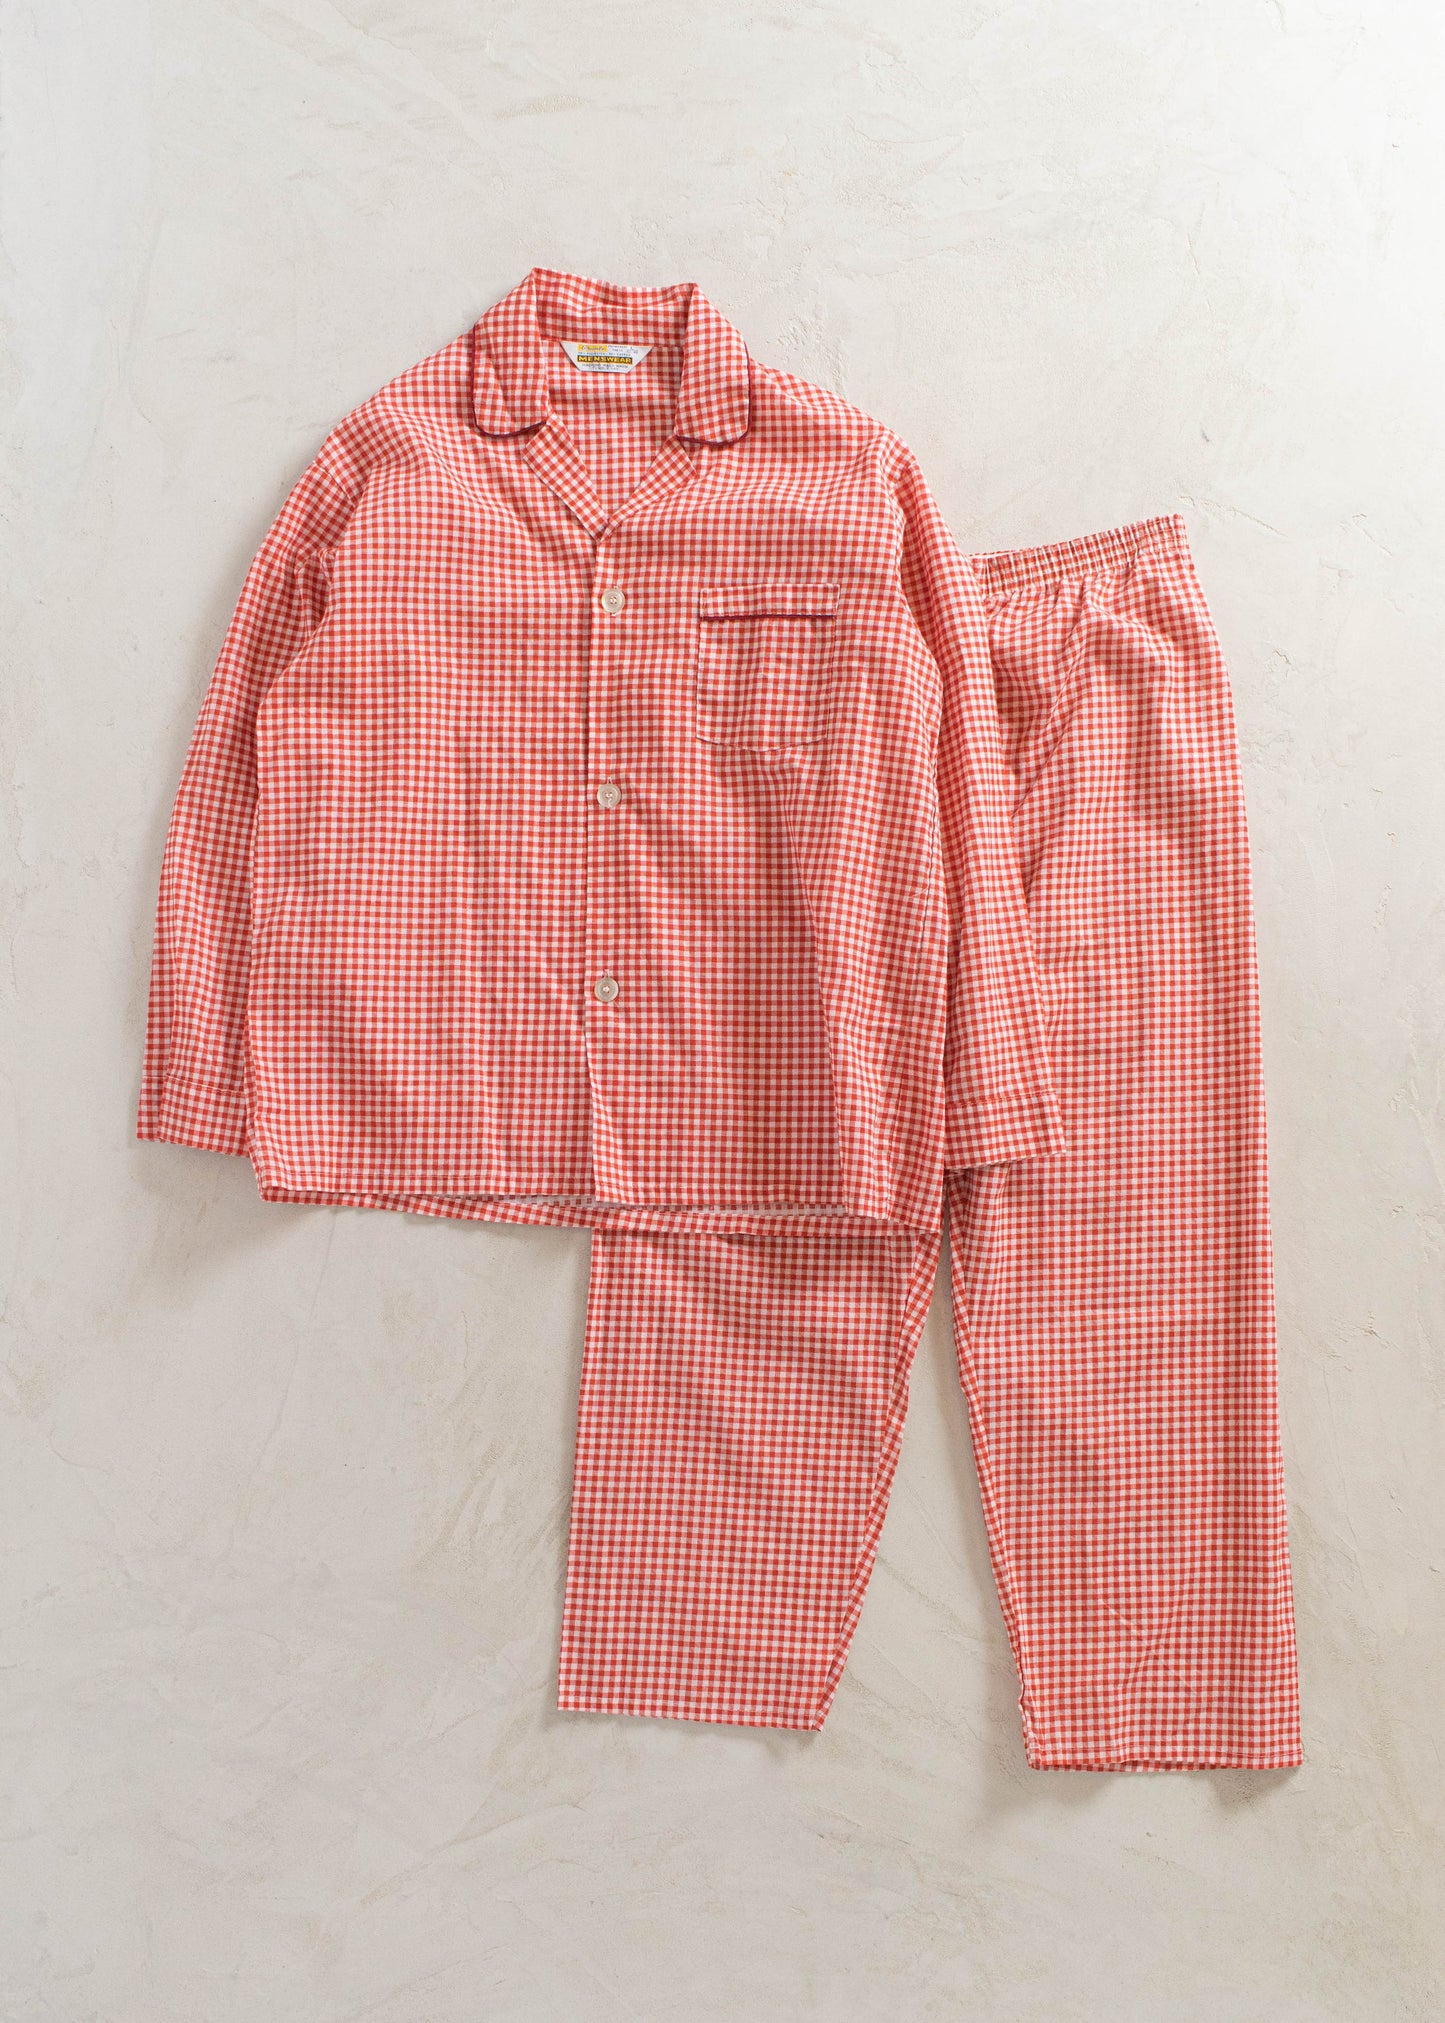 1970s Grants Menswear Plaid Pattern Pajama Set Size M/L